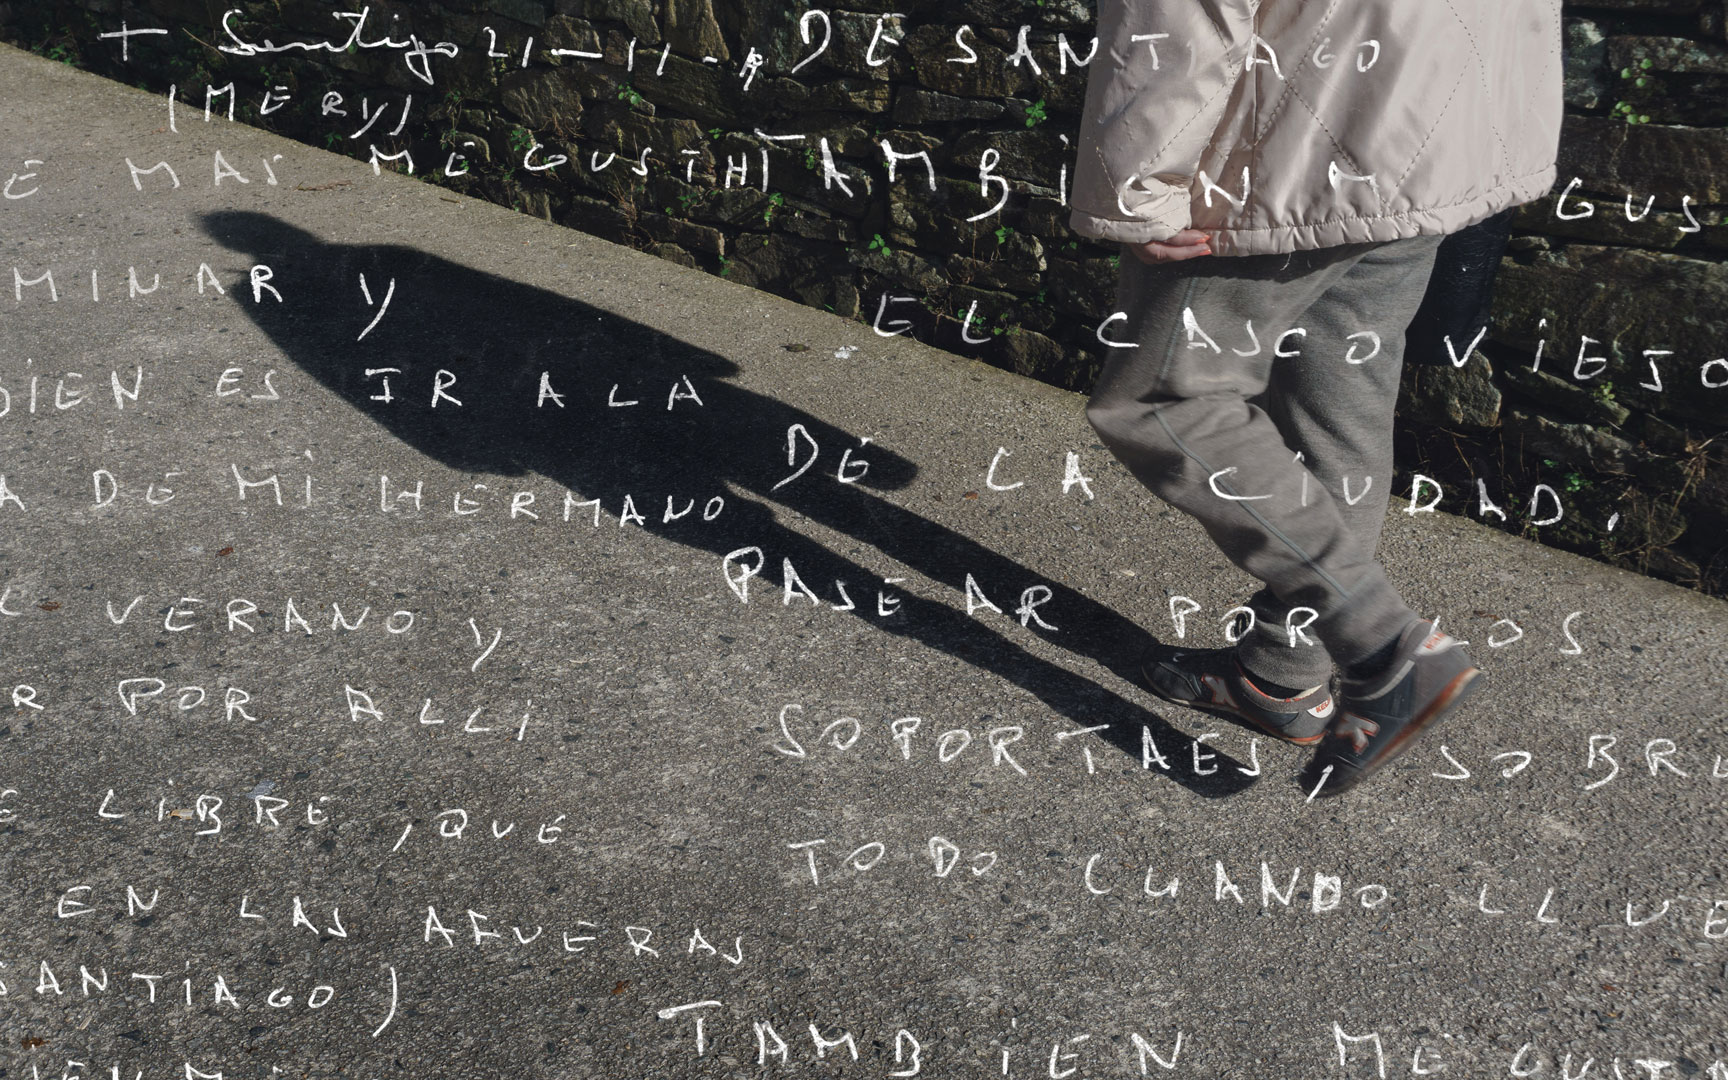 Composición fotográfica que superpone una carta manustrica sobre la silueta de una persona caminando